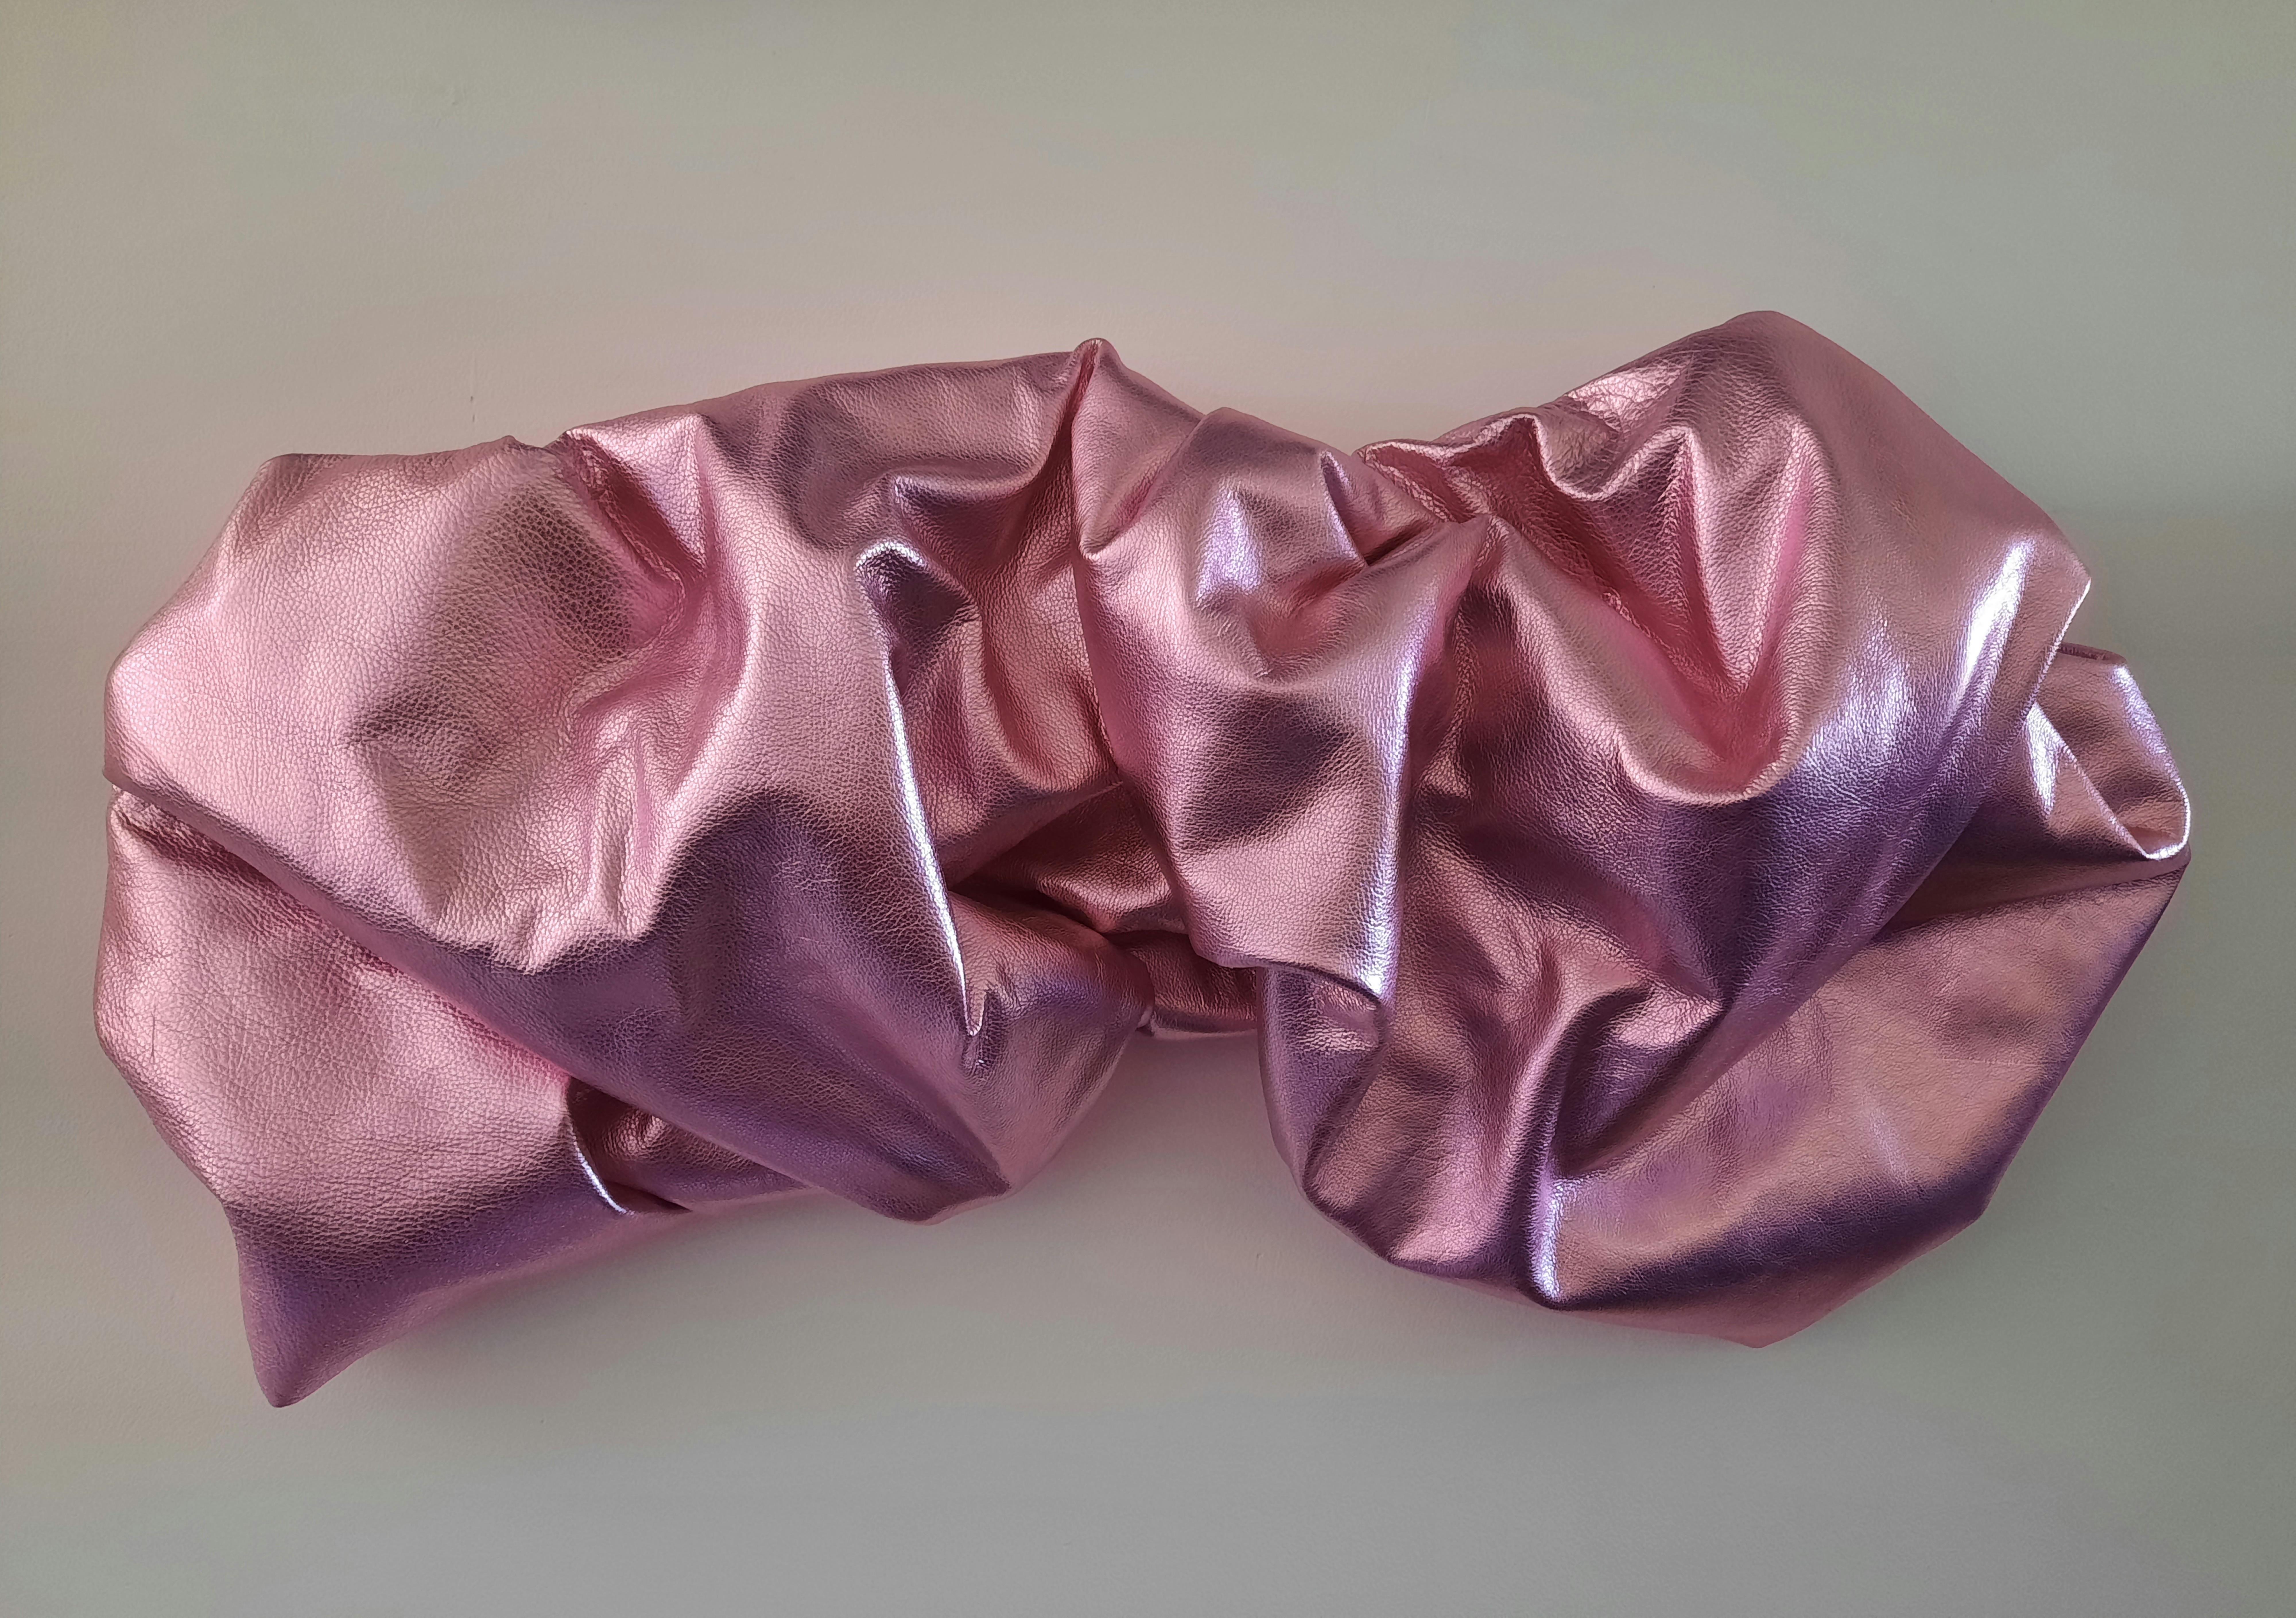 Drape 113 (light pink  folds rose pop slick metallic smooth wall sculpture art)